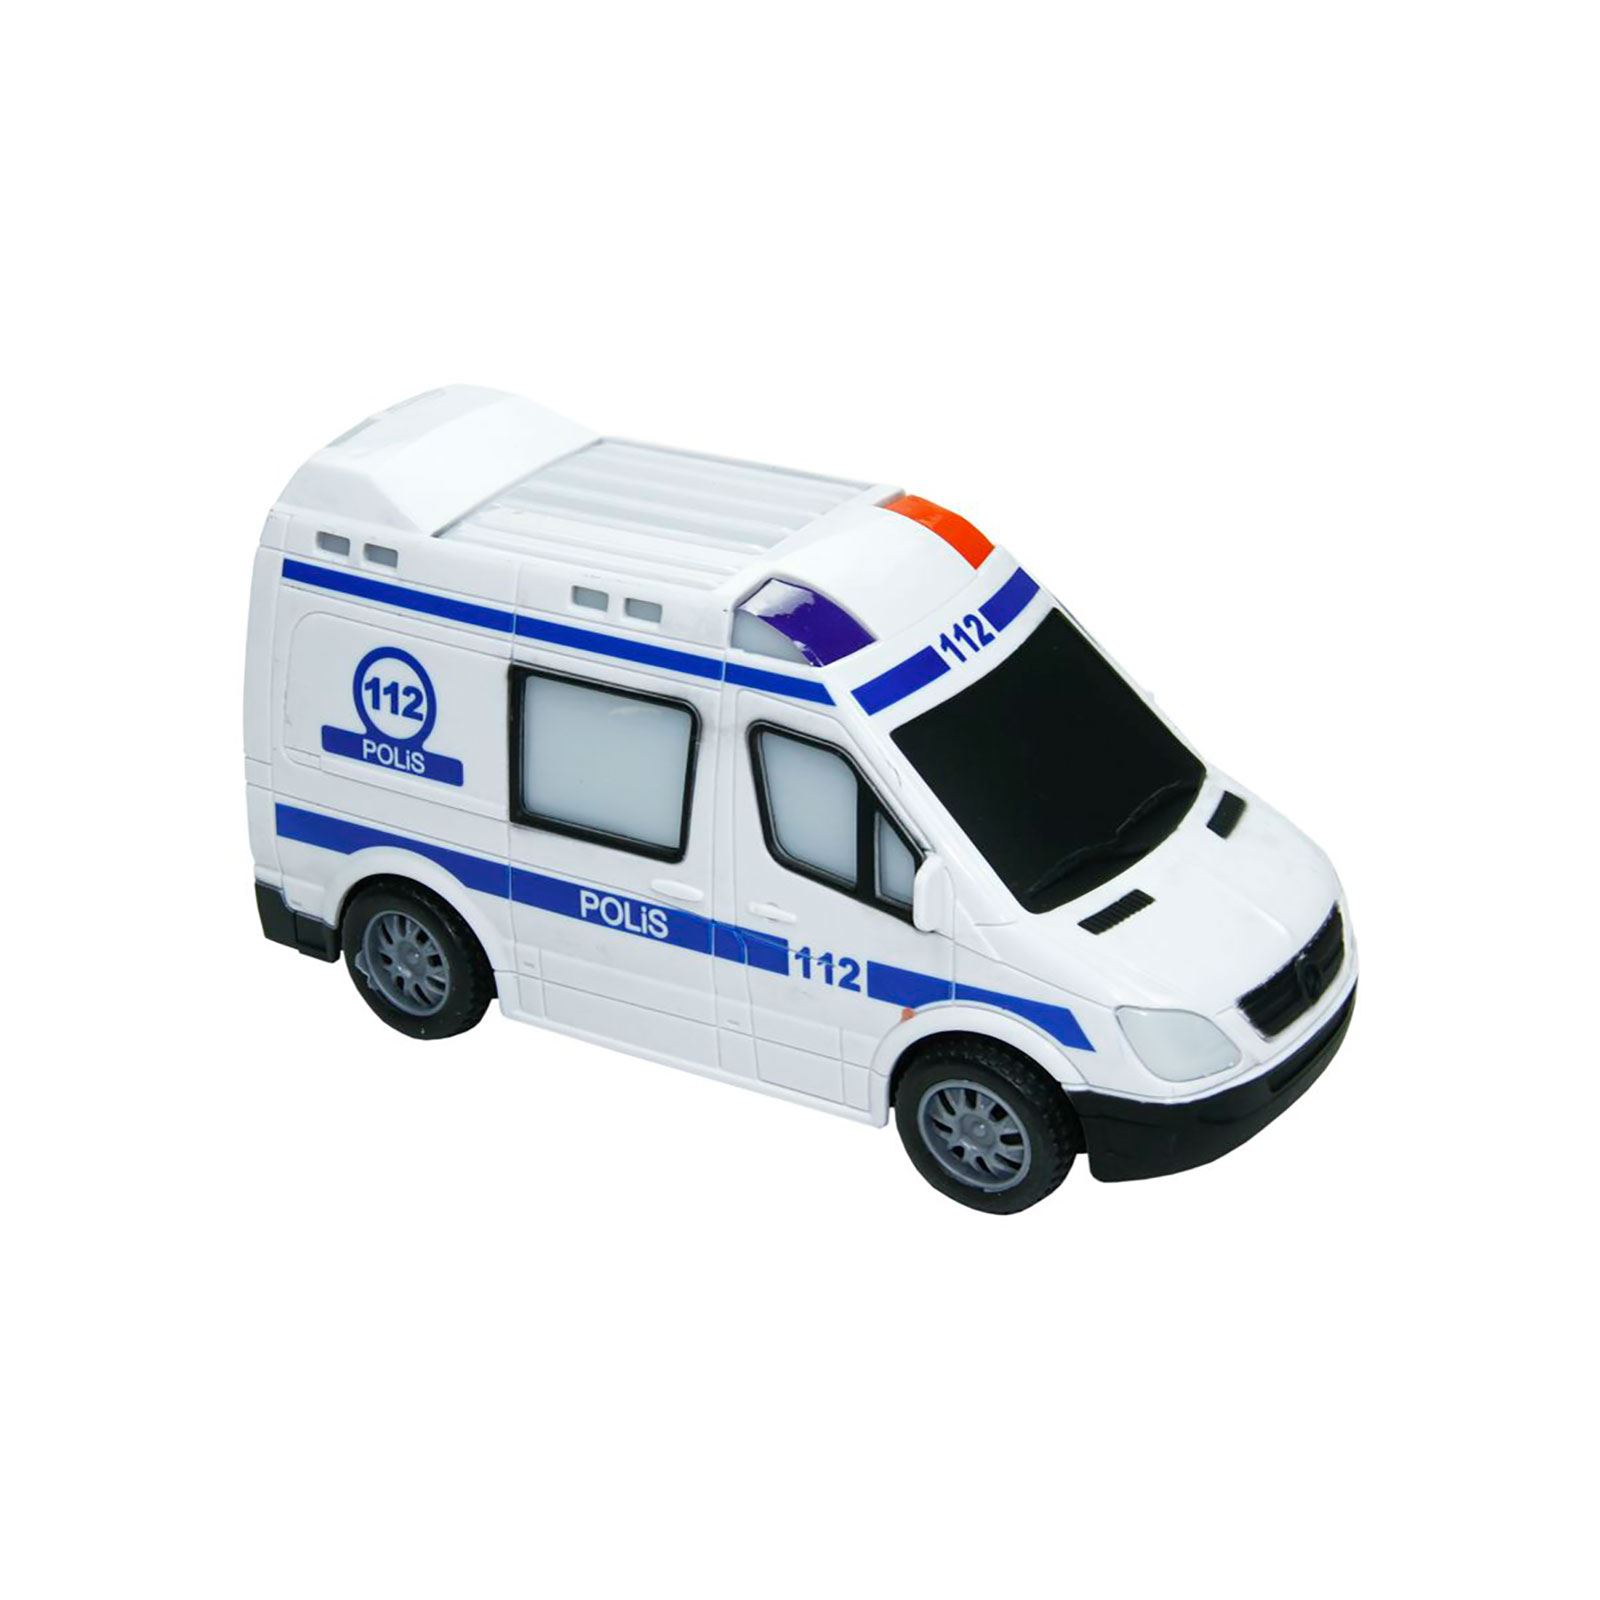 Vardem Oyuncak Sesli Ve Işıklı Polis Arabası Beyaz